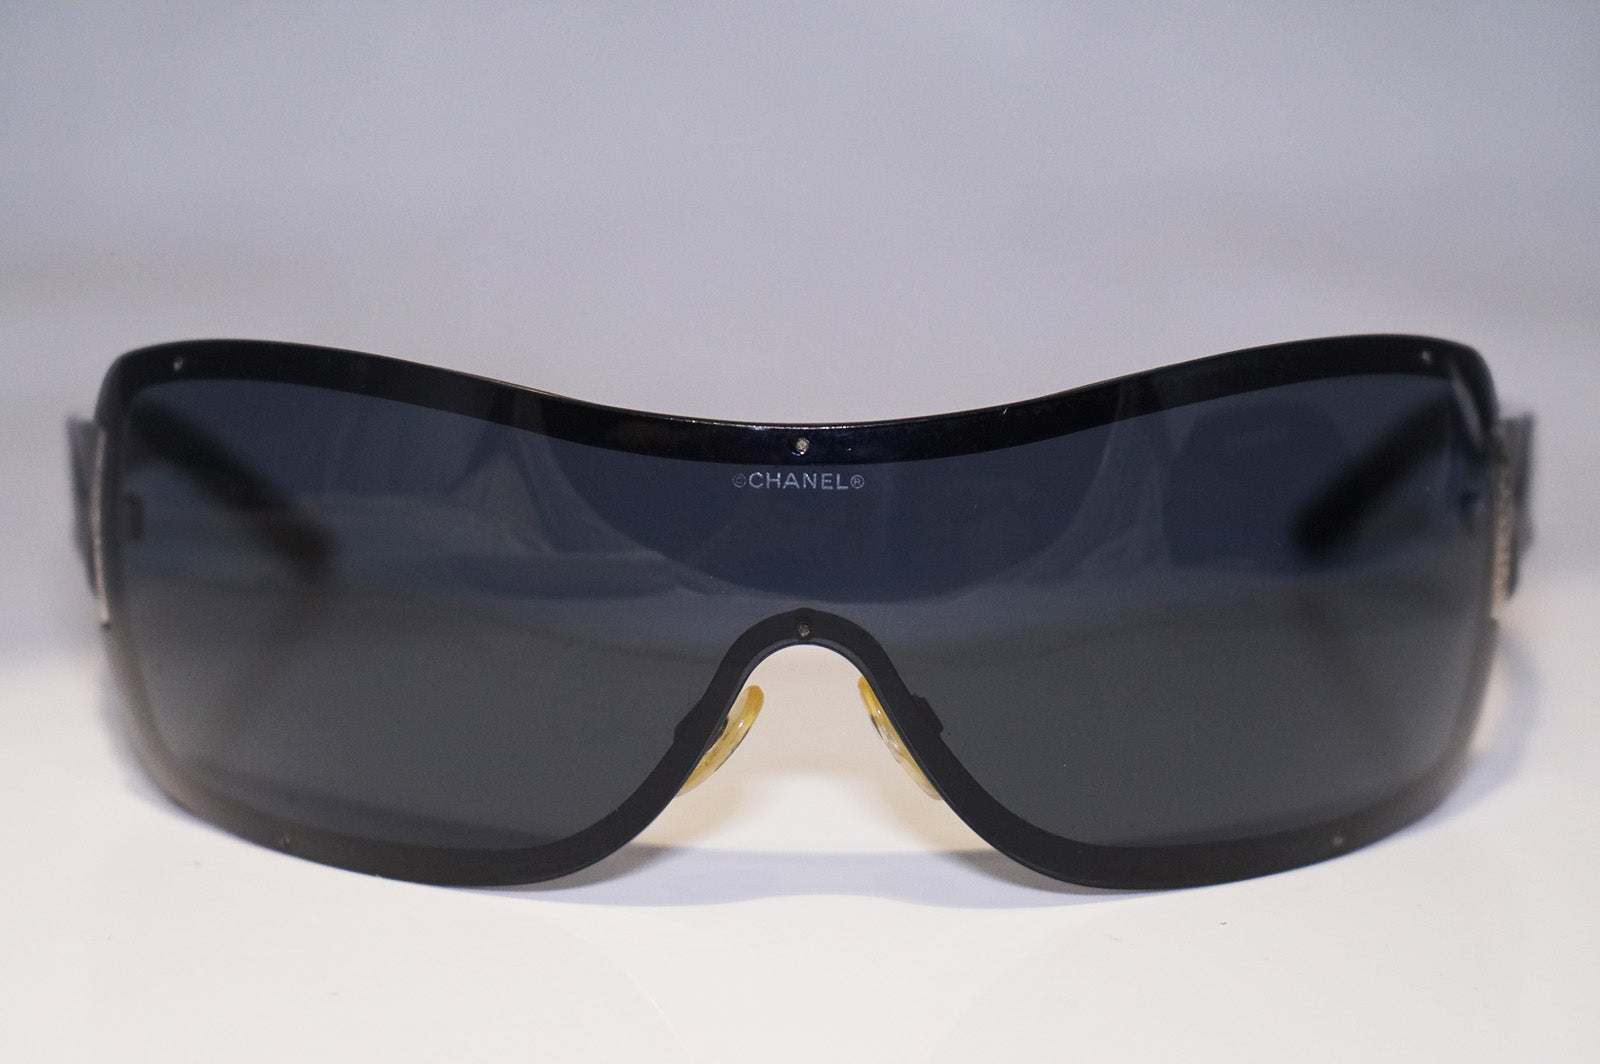 Sunglasses Chanel Black in Plastic - 26423960